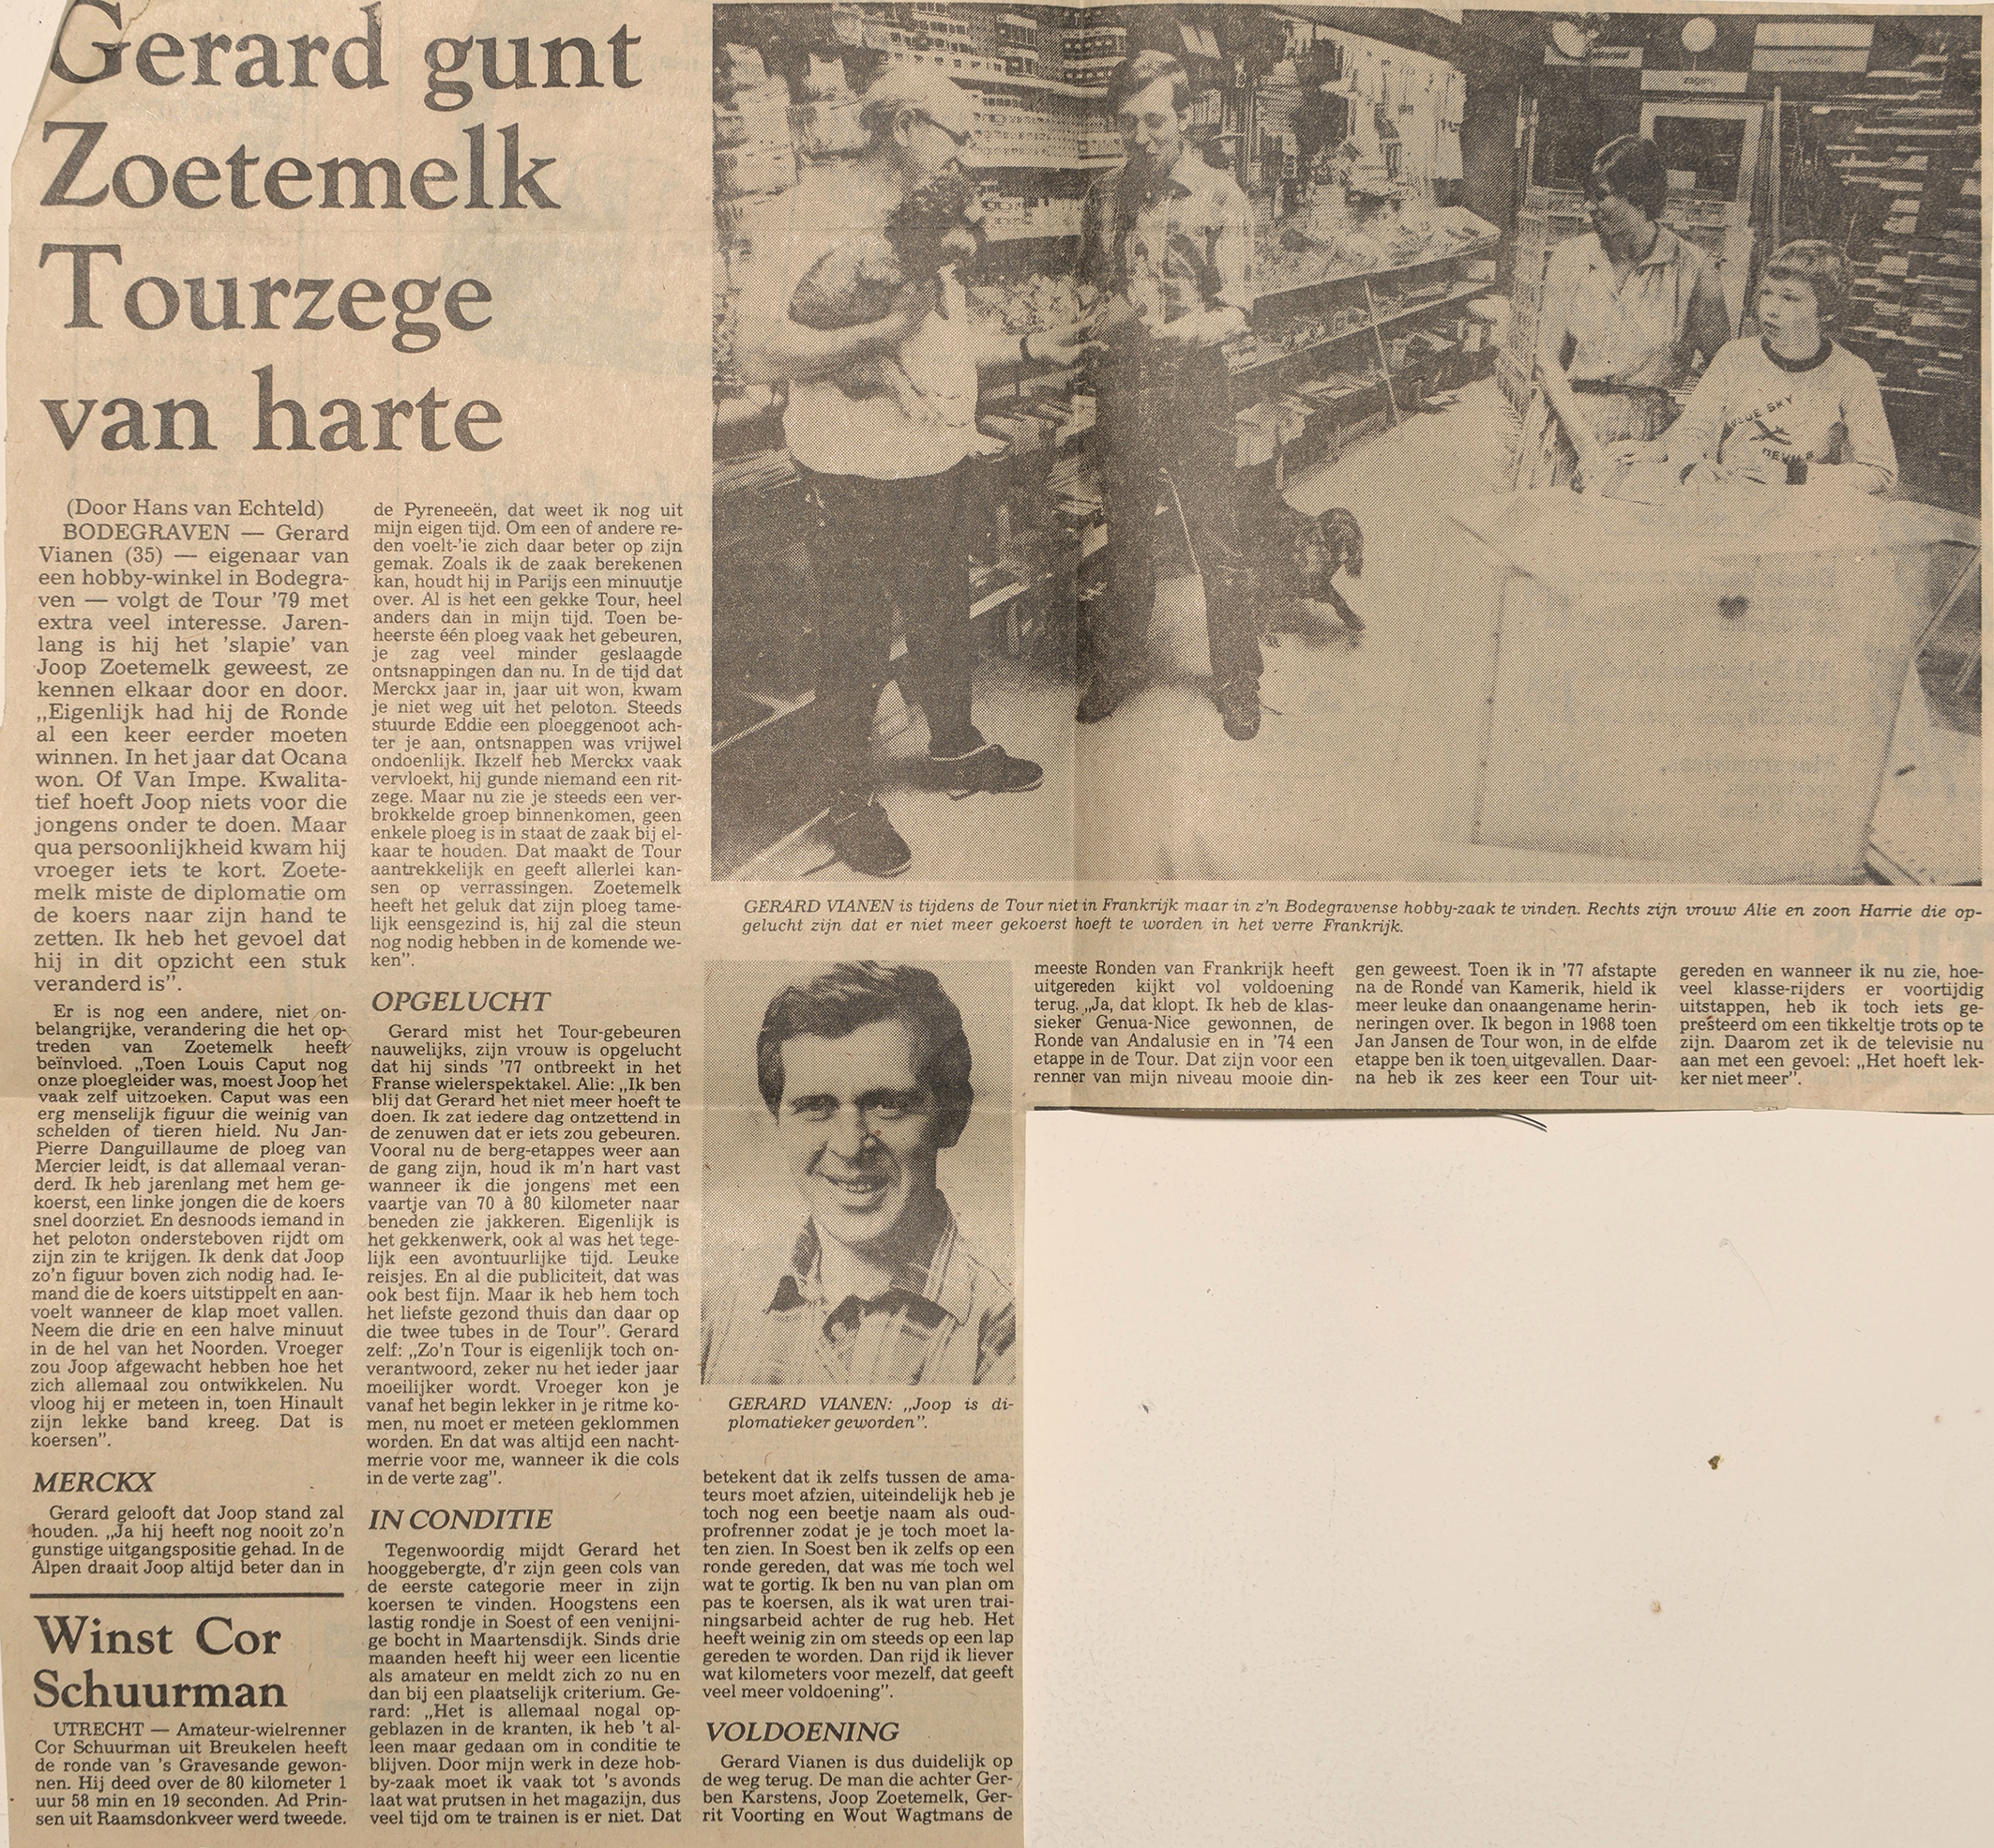 GV_ Gerard gunt Zoetemelk Tourzege '79